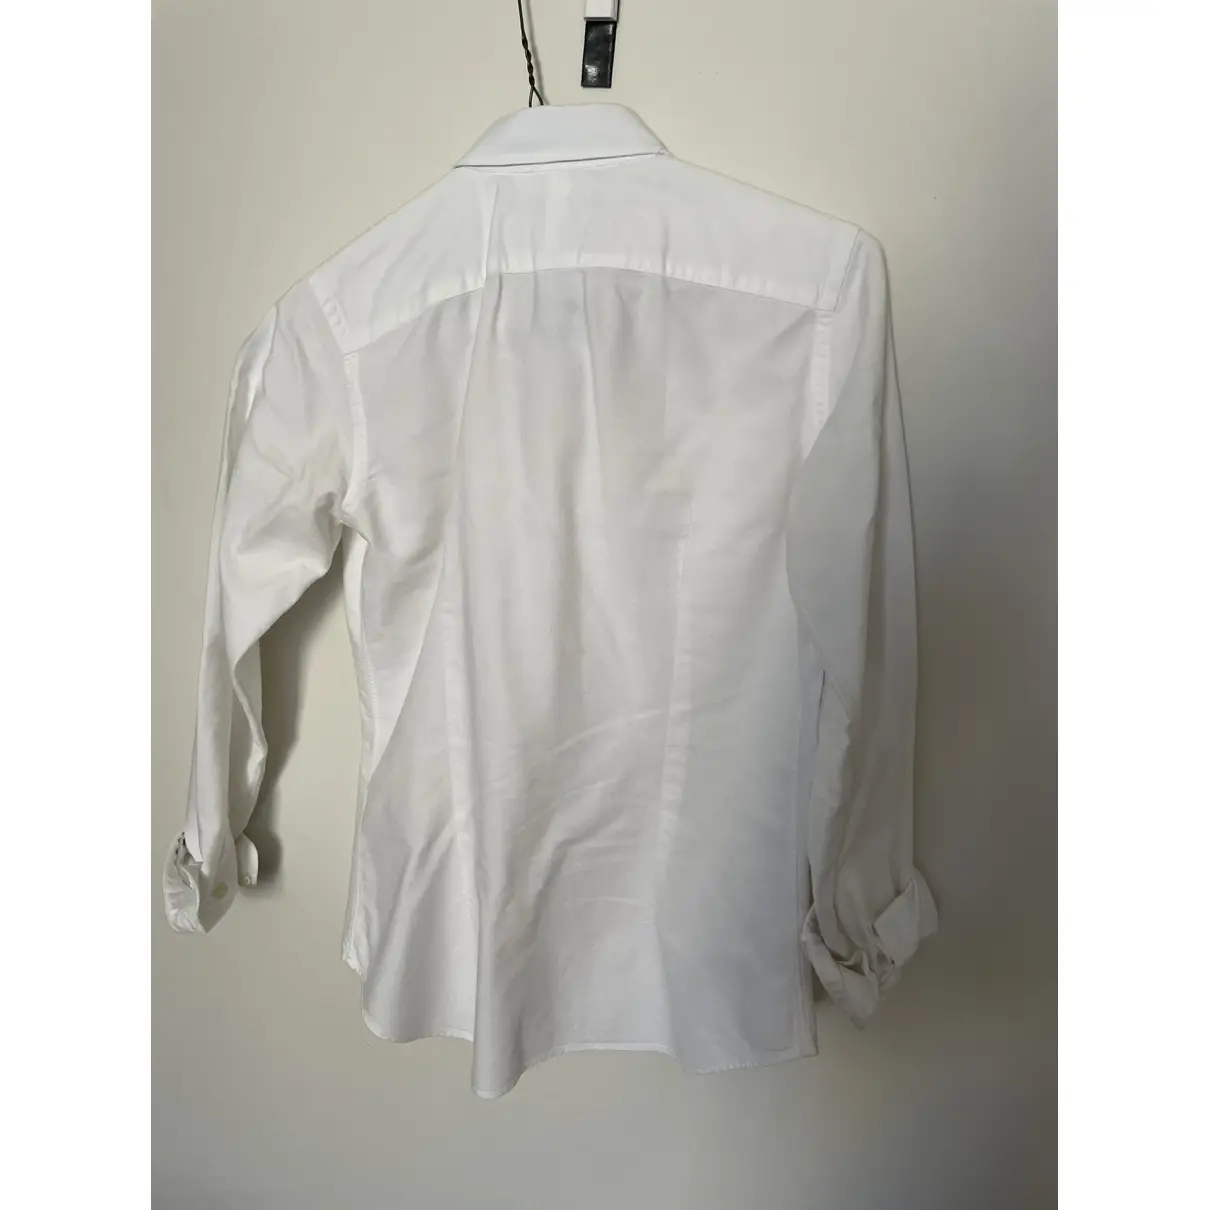 Buy Ralph Lauren Shirt online